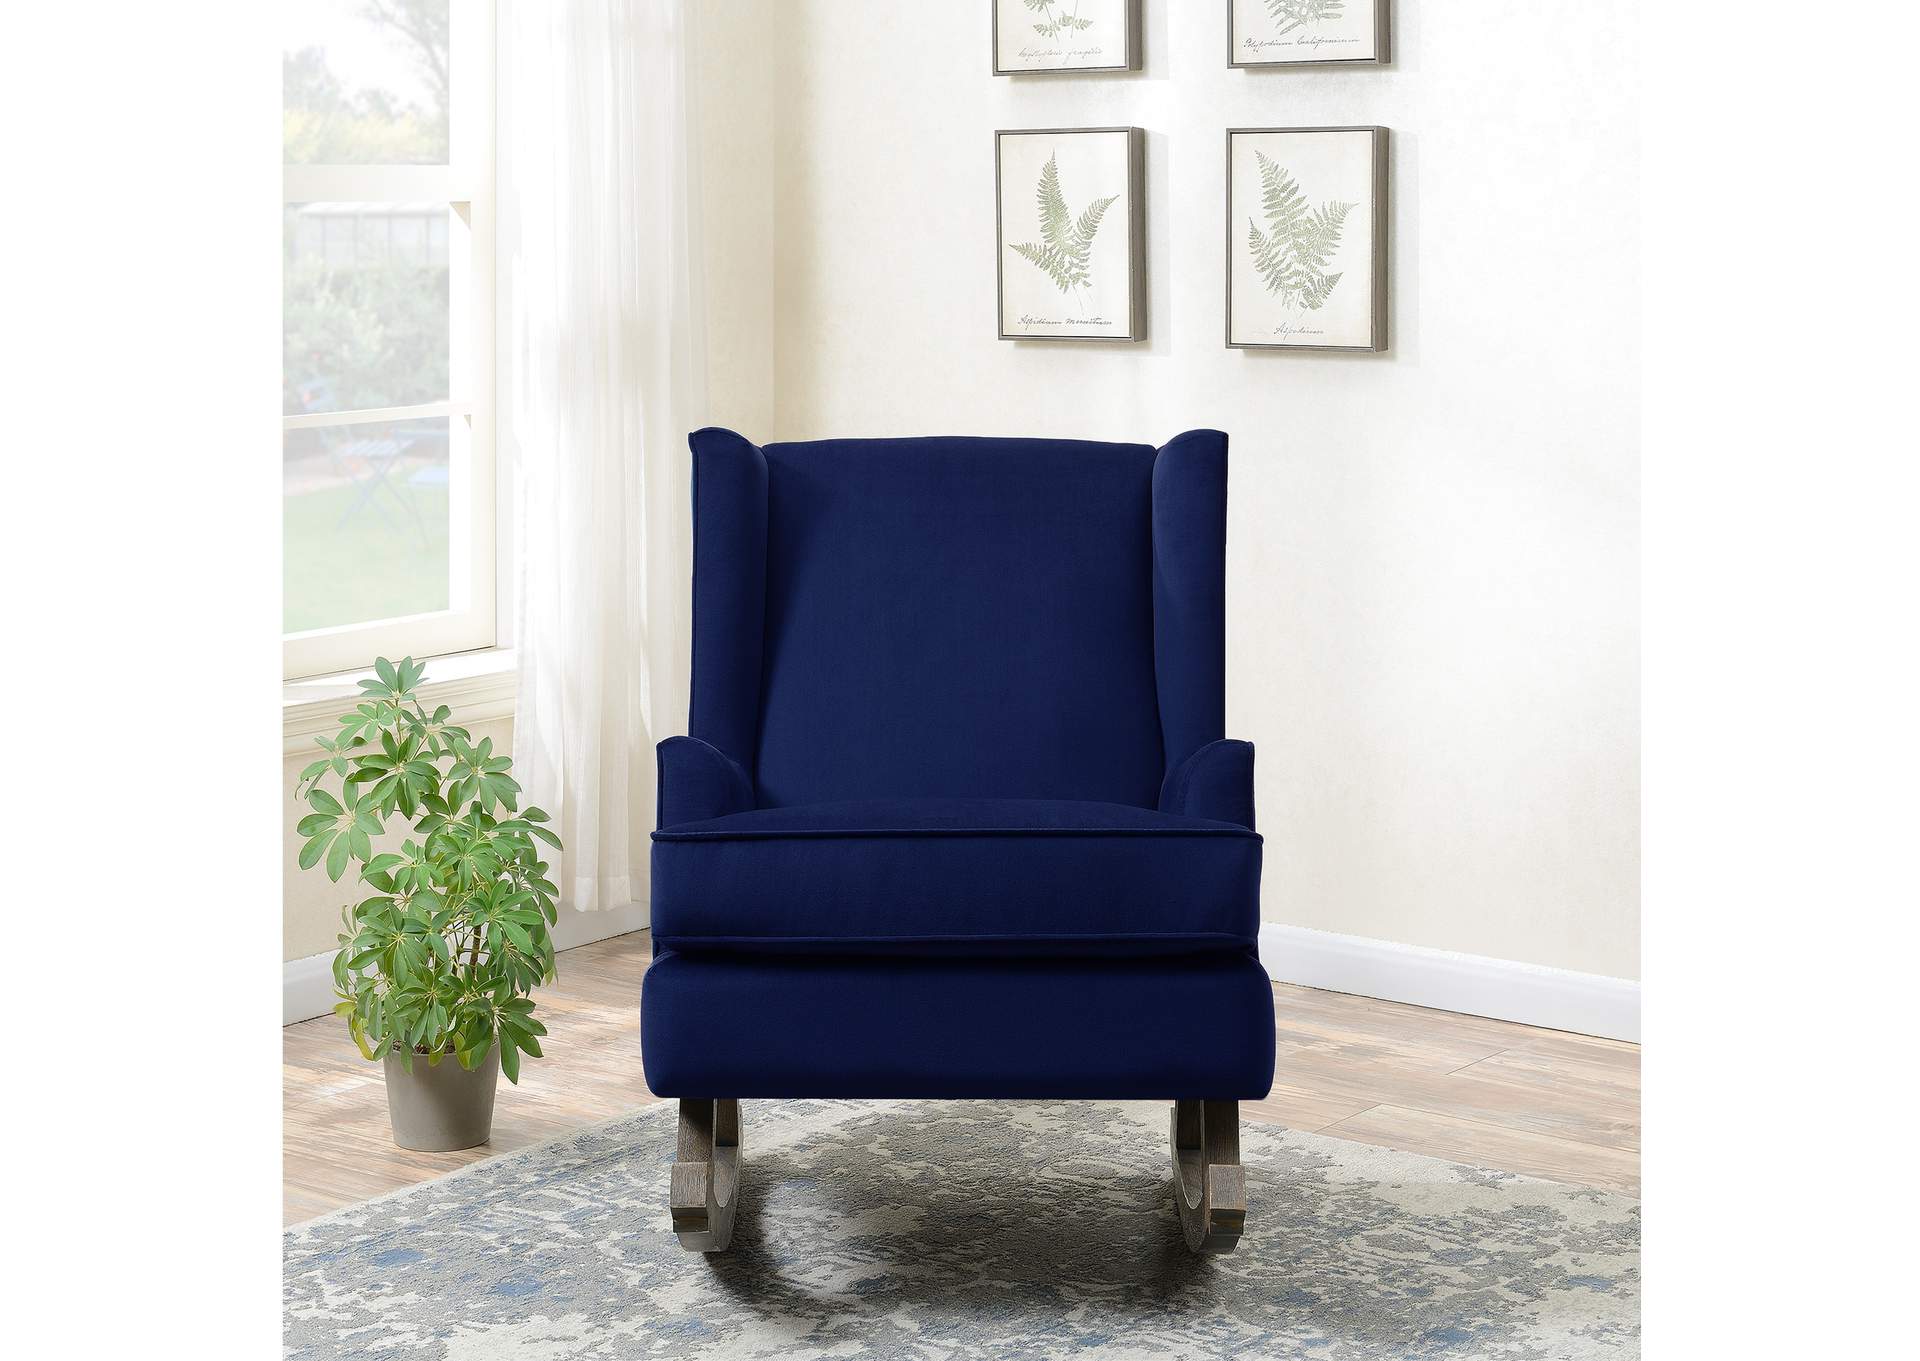 Seaside Rocker Chair Xian Ink Blue,Elements